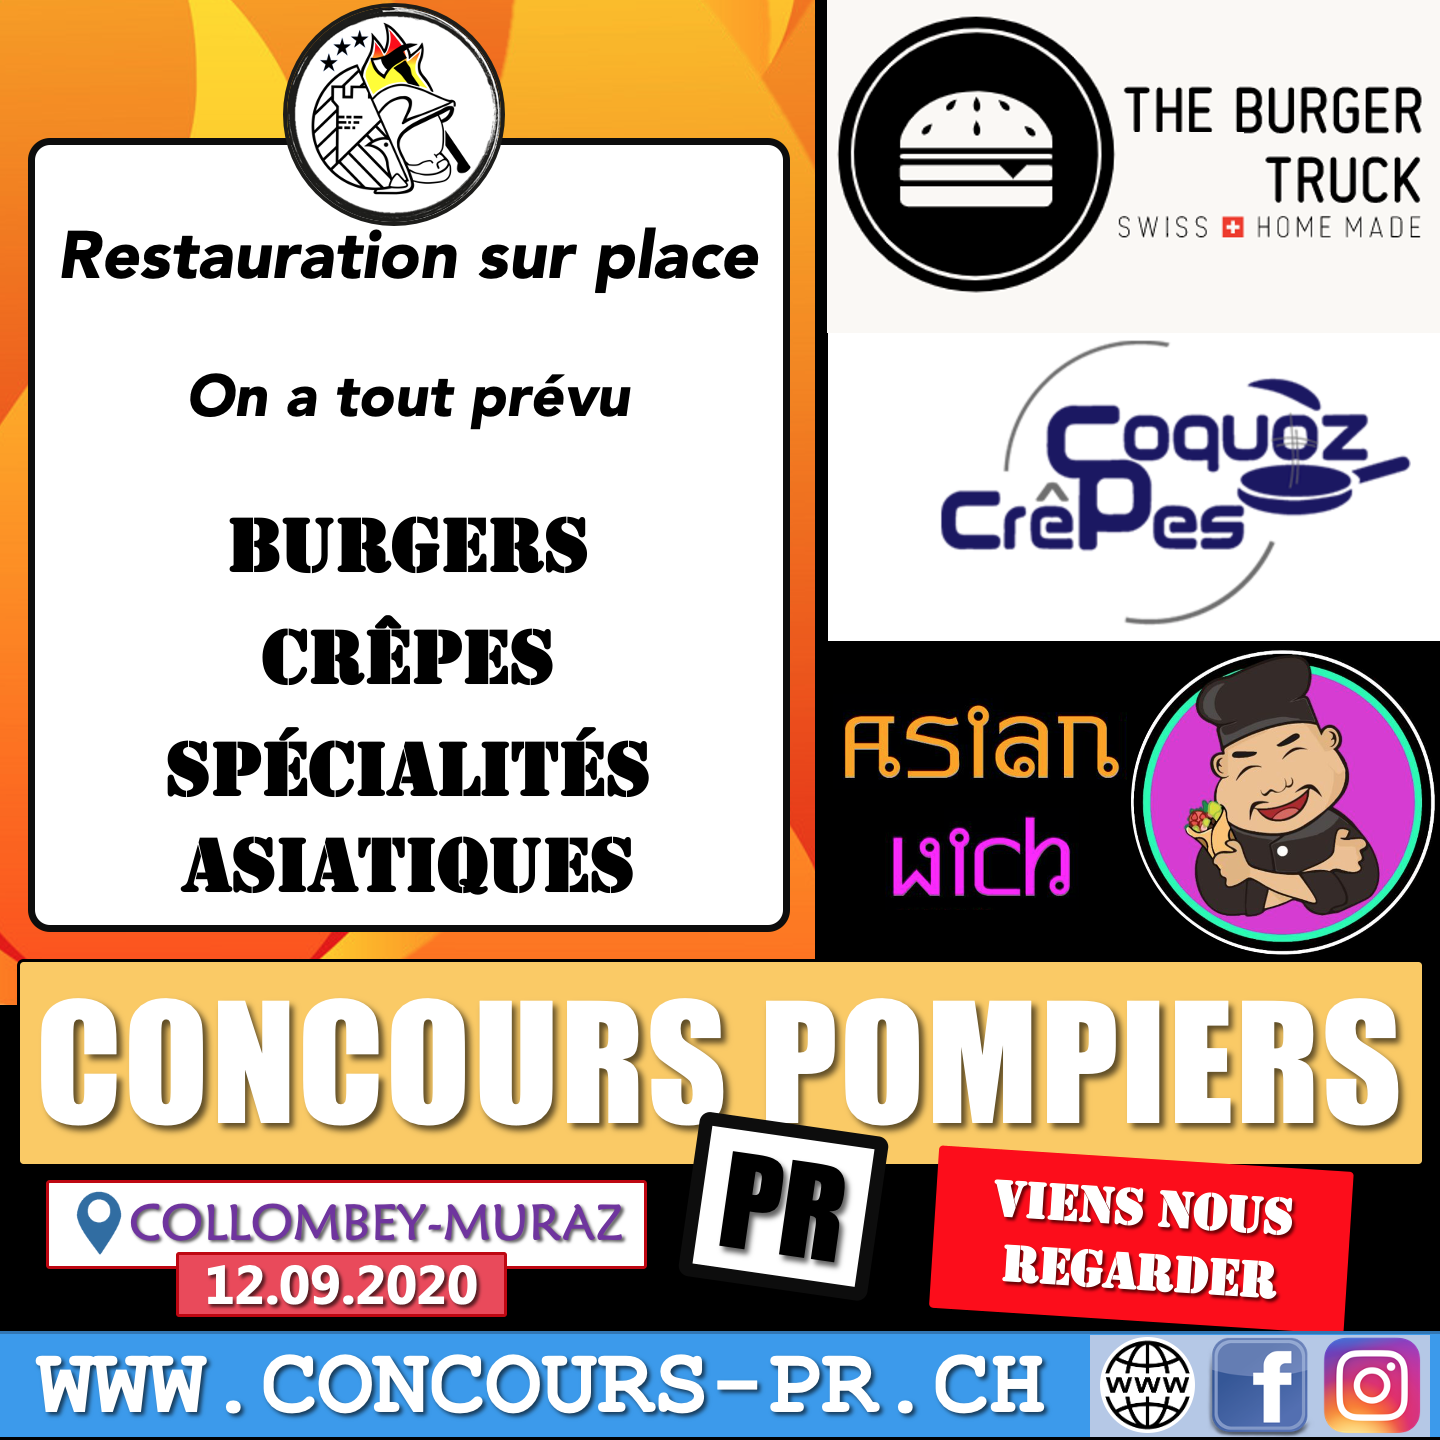 Restauration sur place pour tous -> Burgers / Crêpes / Spécialités Asiatiques